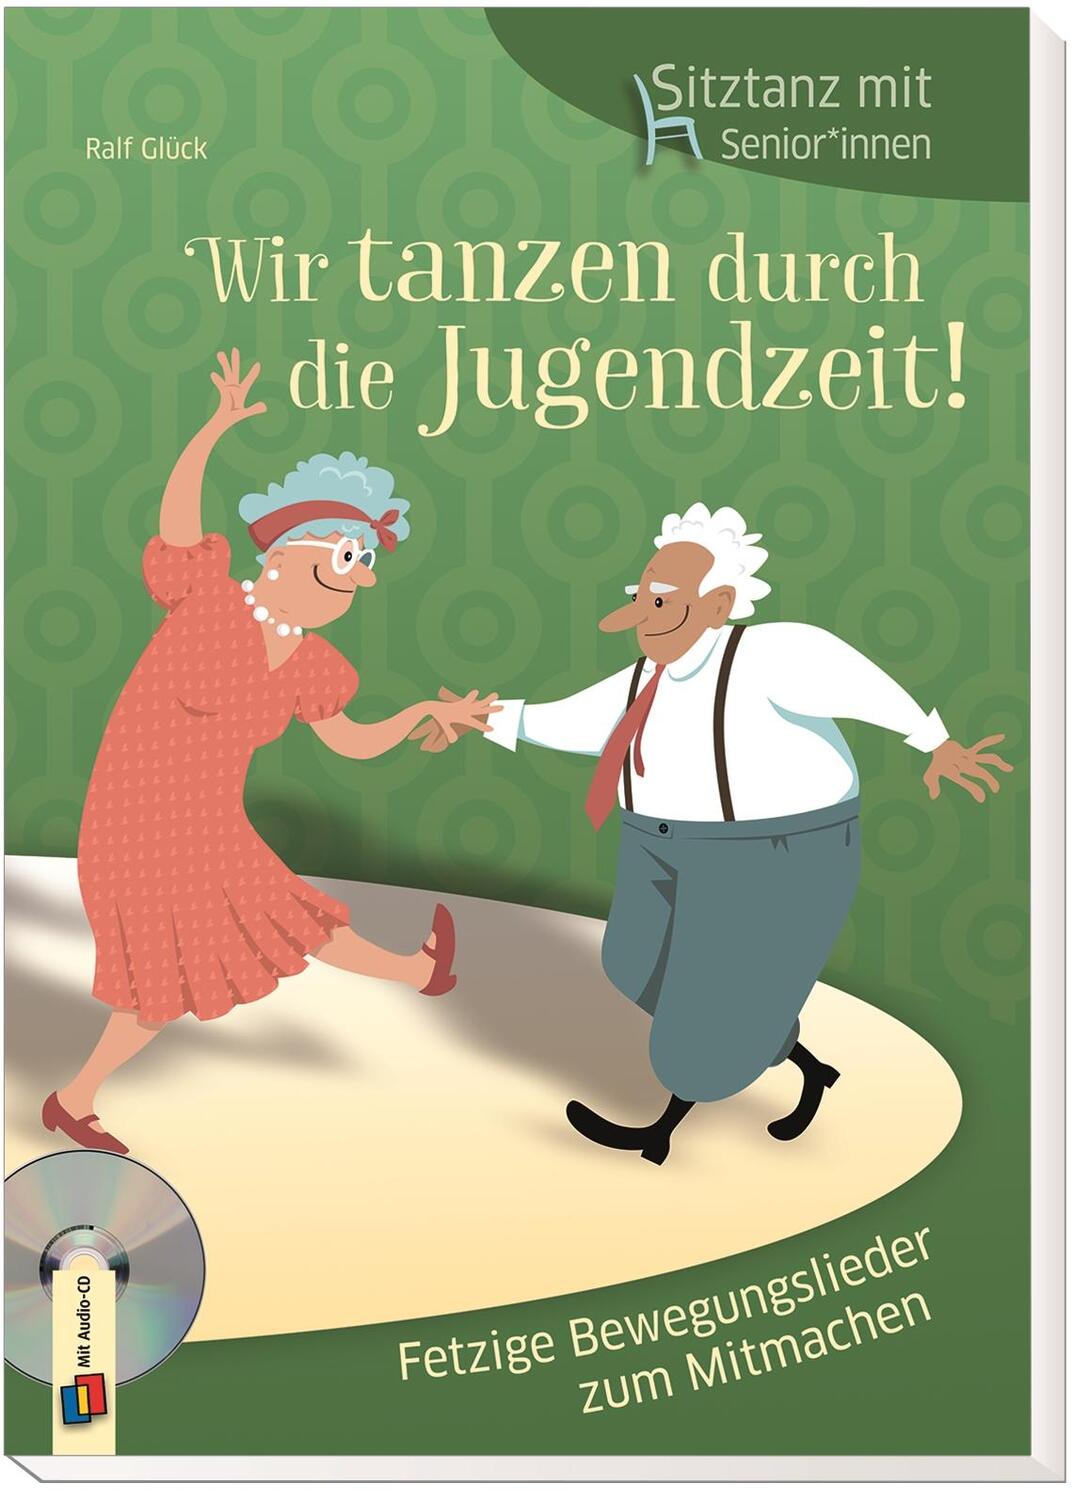 Bild: 9783834641458 | Sitztanz für Senioren: Wir tanzen durch die Jugendzeit! | Ralf Glück